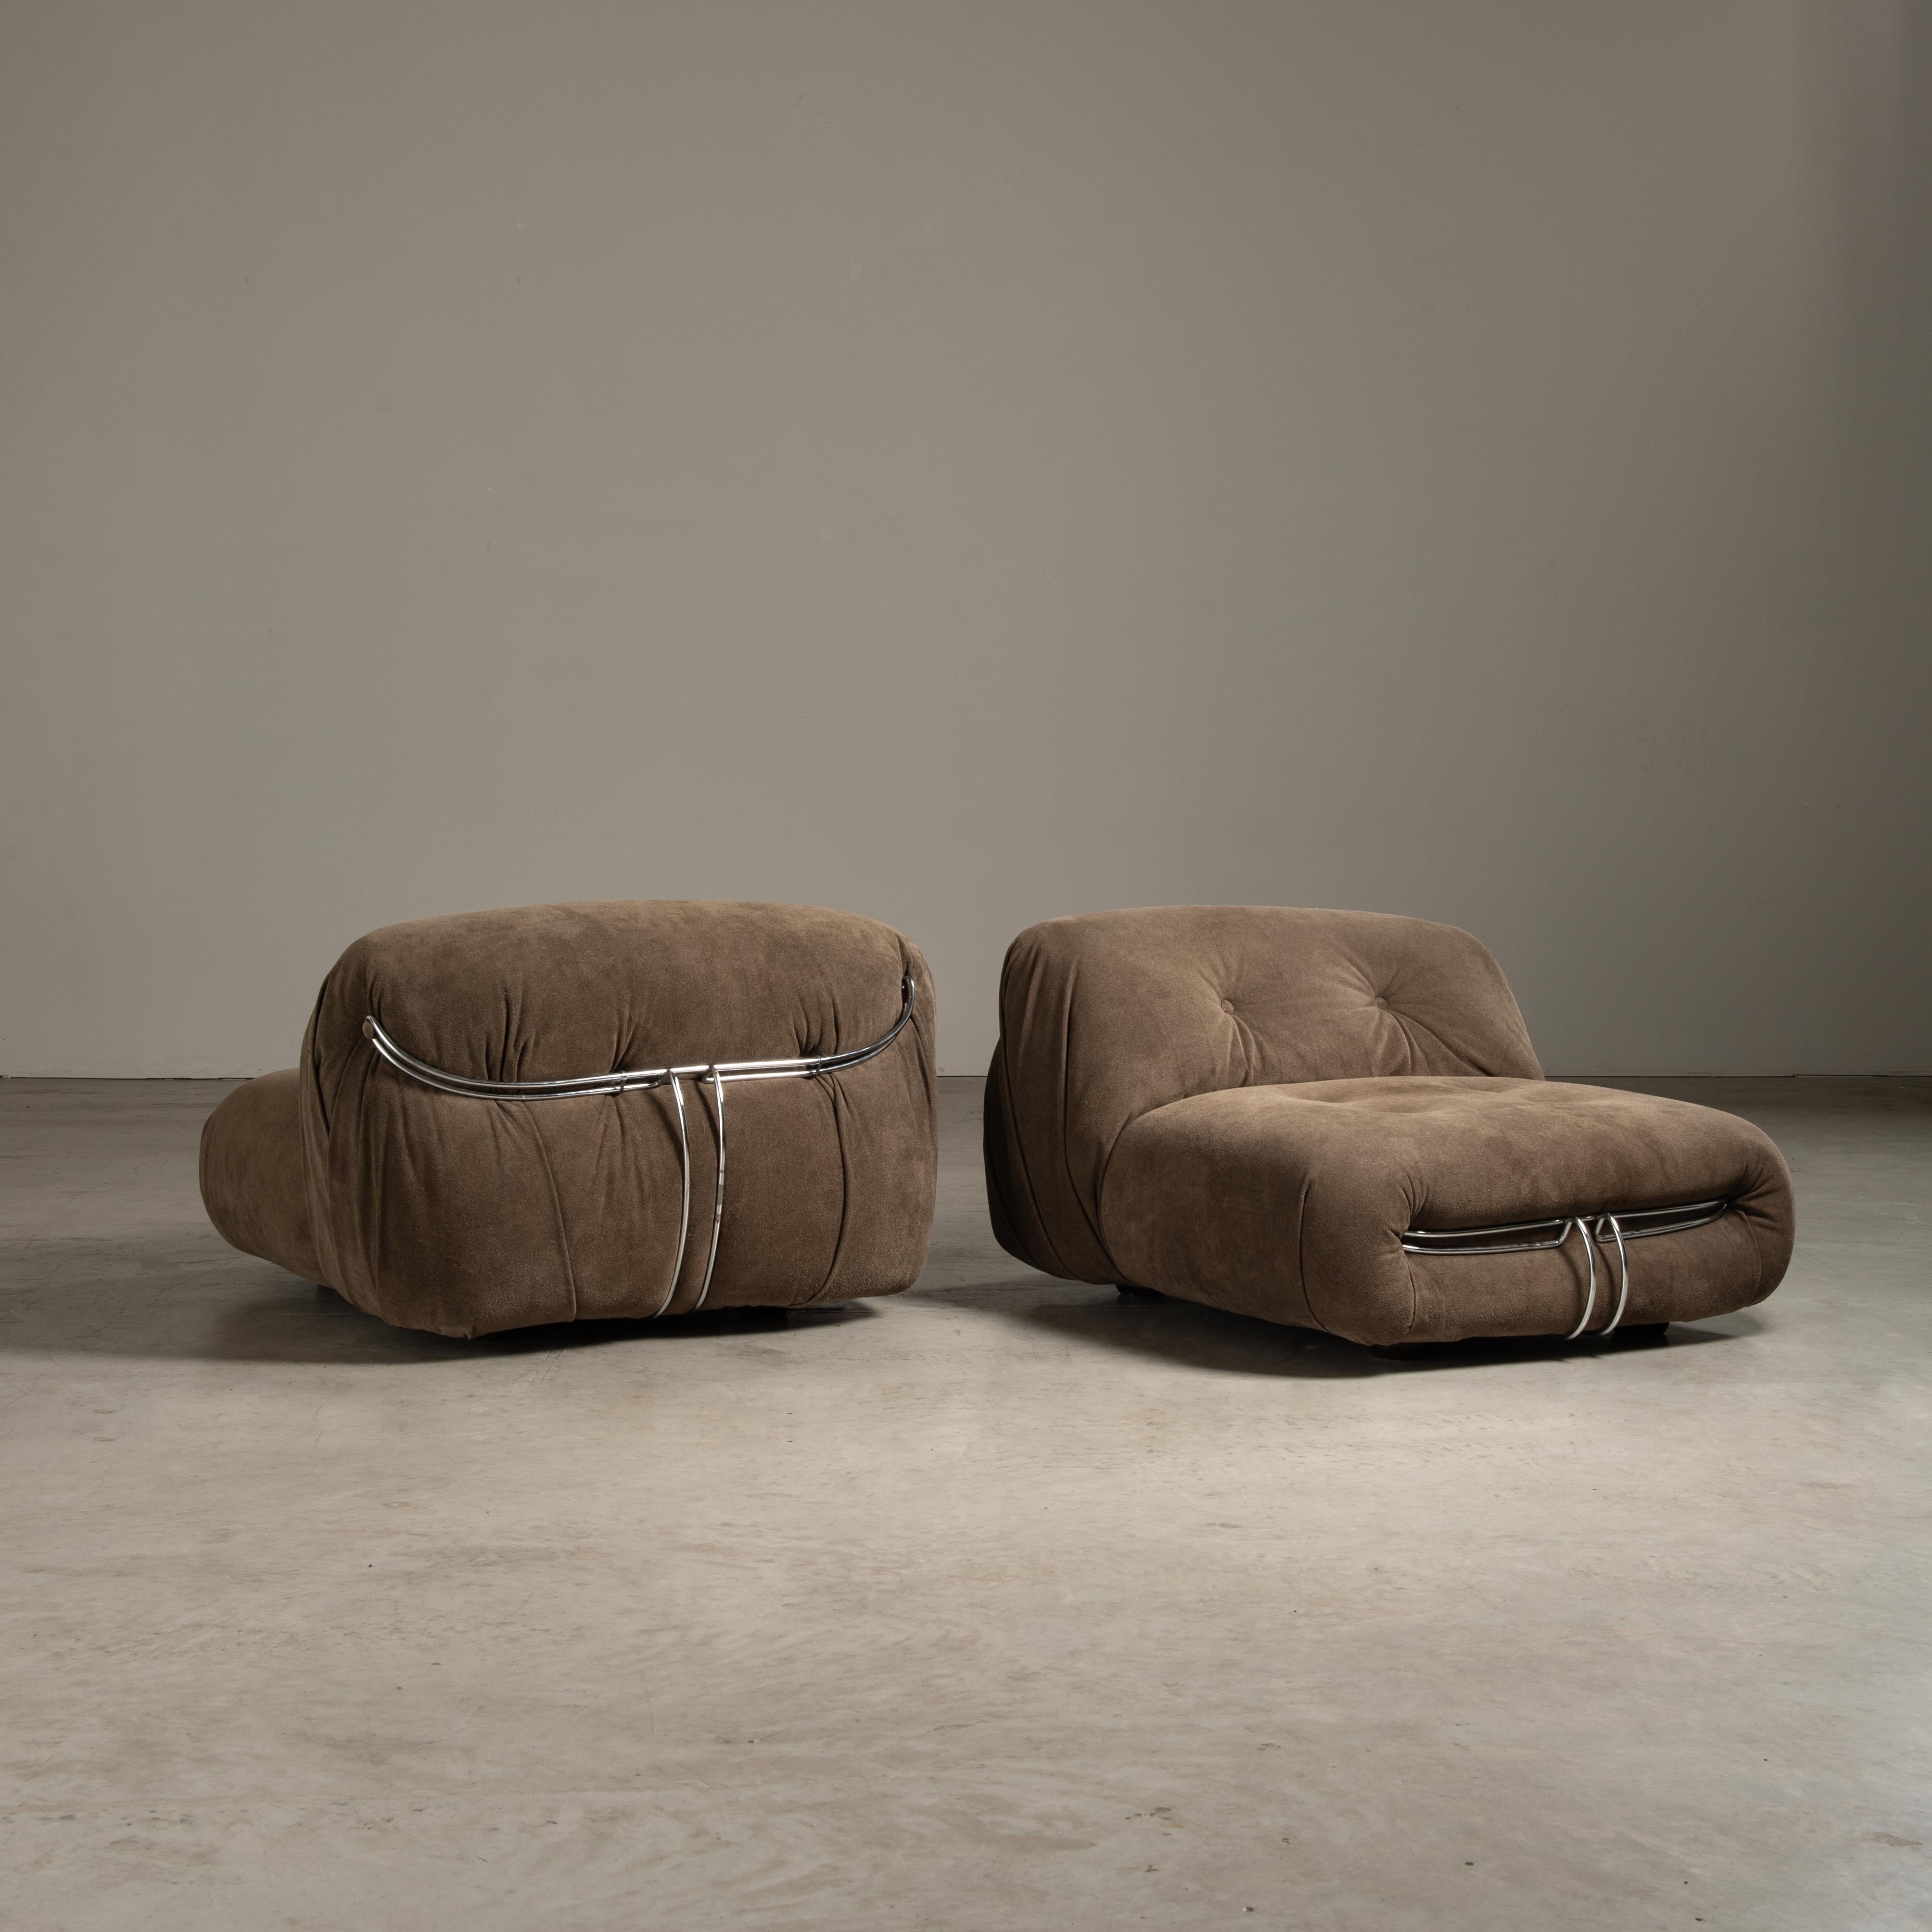 Der Soriana Lounge Chair zeichnet sich durch seine kräftige, bauchige Form aus, die den Sitzenden in eine voluminöse, gepolsterte Umarmung hüllt. Die Verwendung eines weichen, wildlederähnlichen Stoffes in einem satten, erdigen Braunton suggeriert